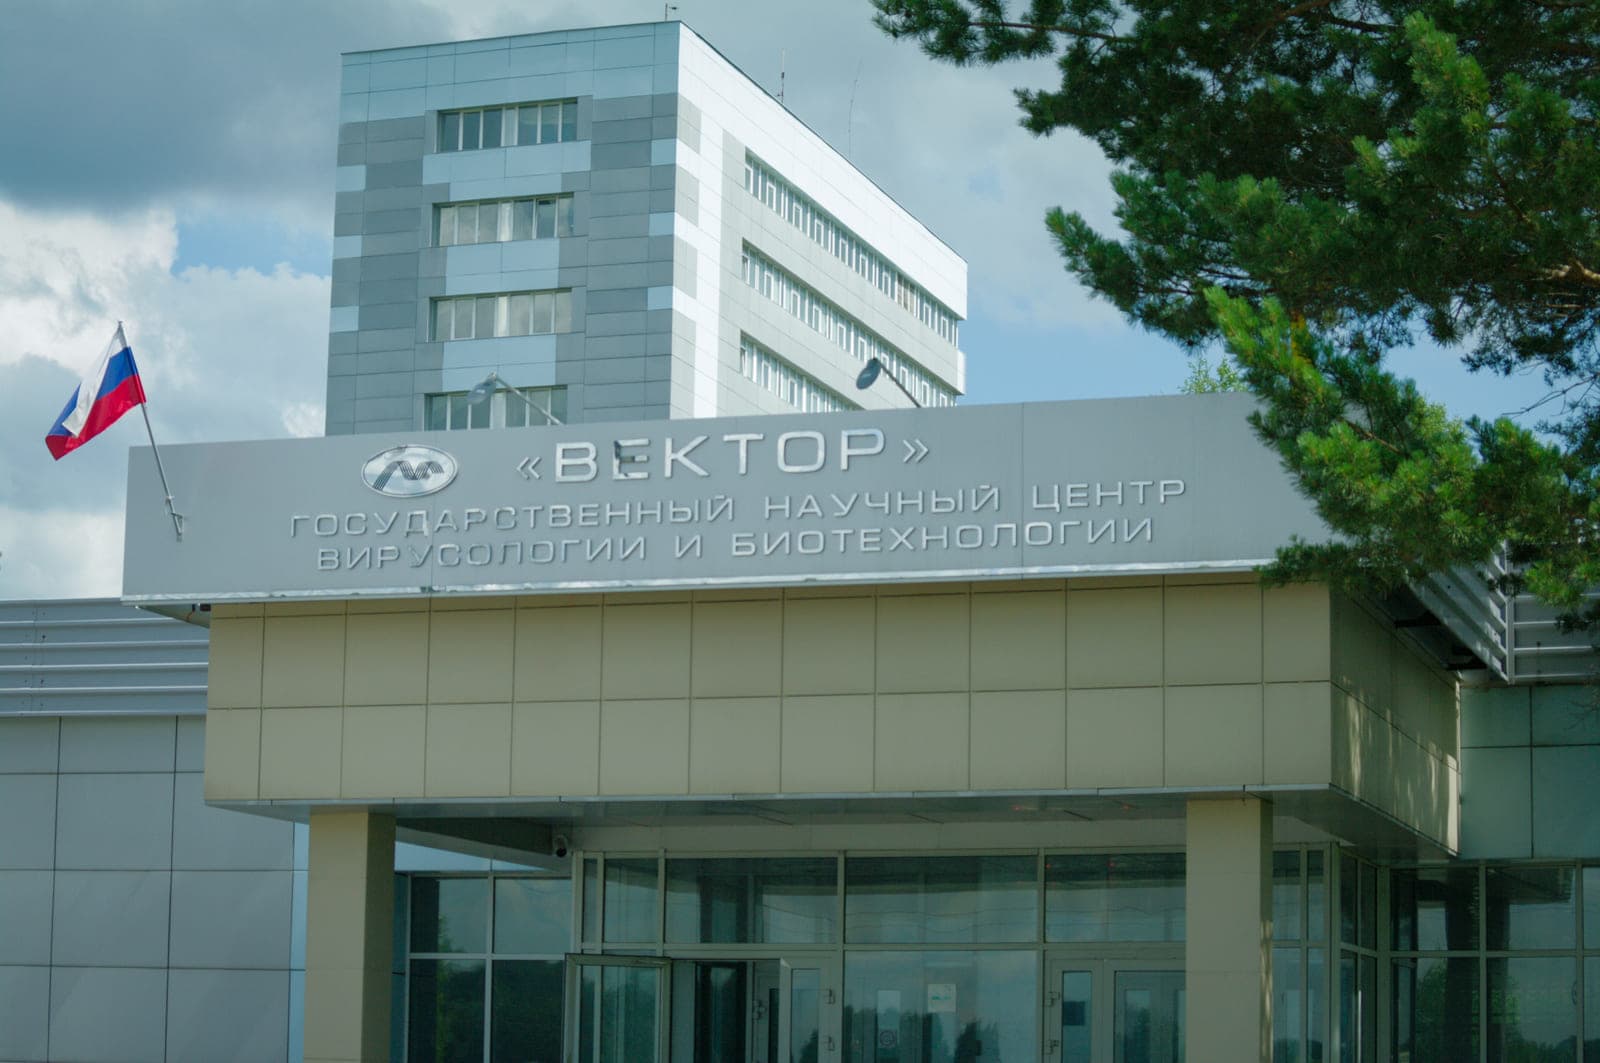 Государственный научный центр вирусологии и биотехнологии "Вектор"